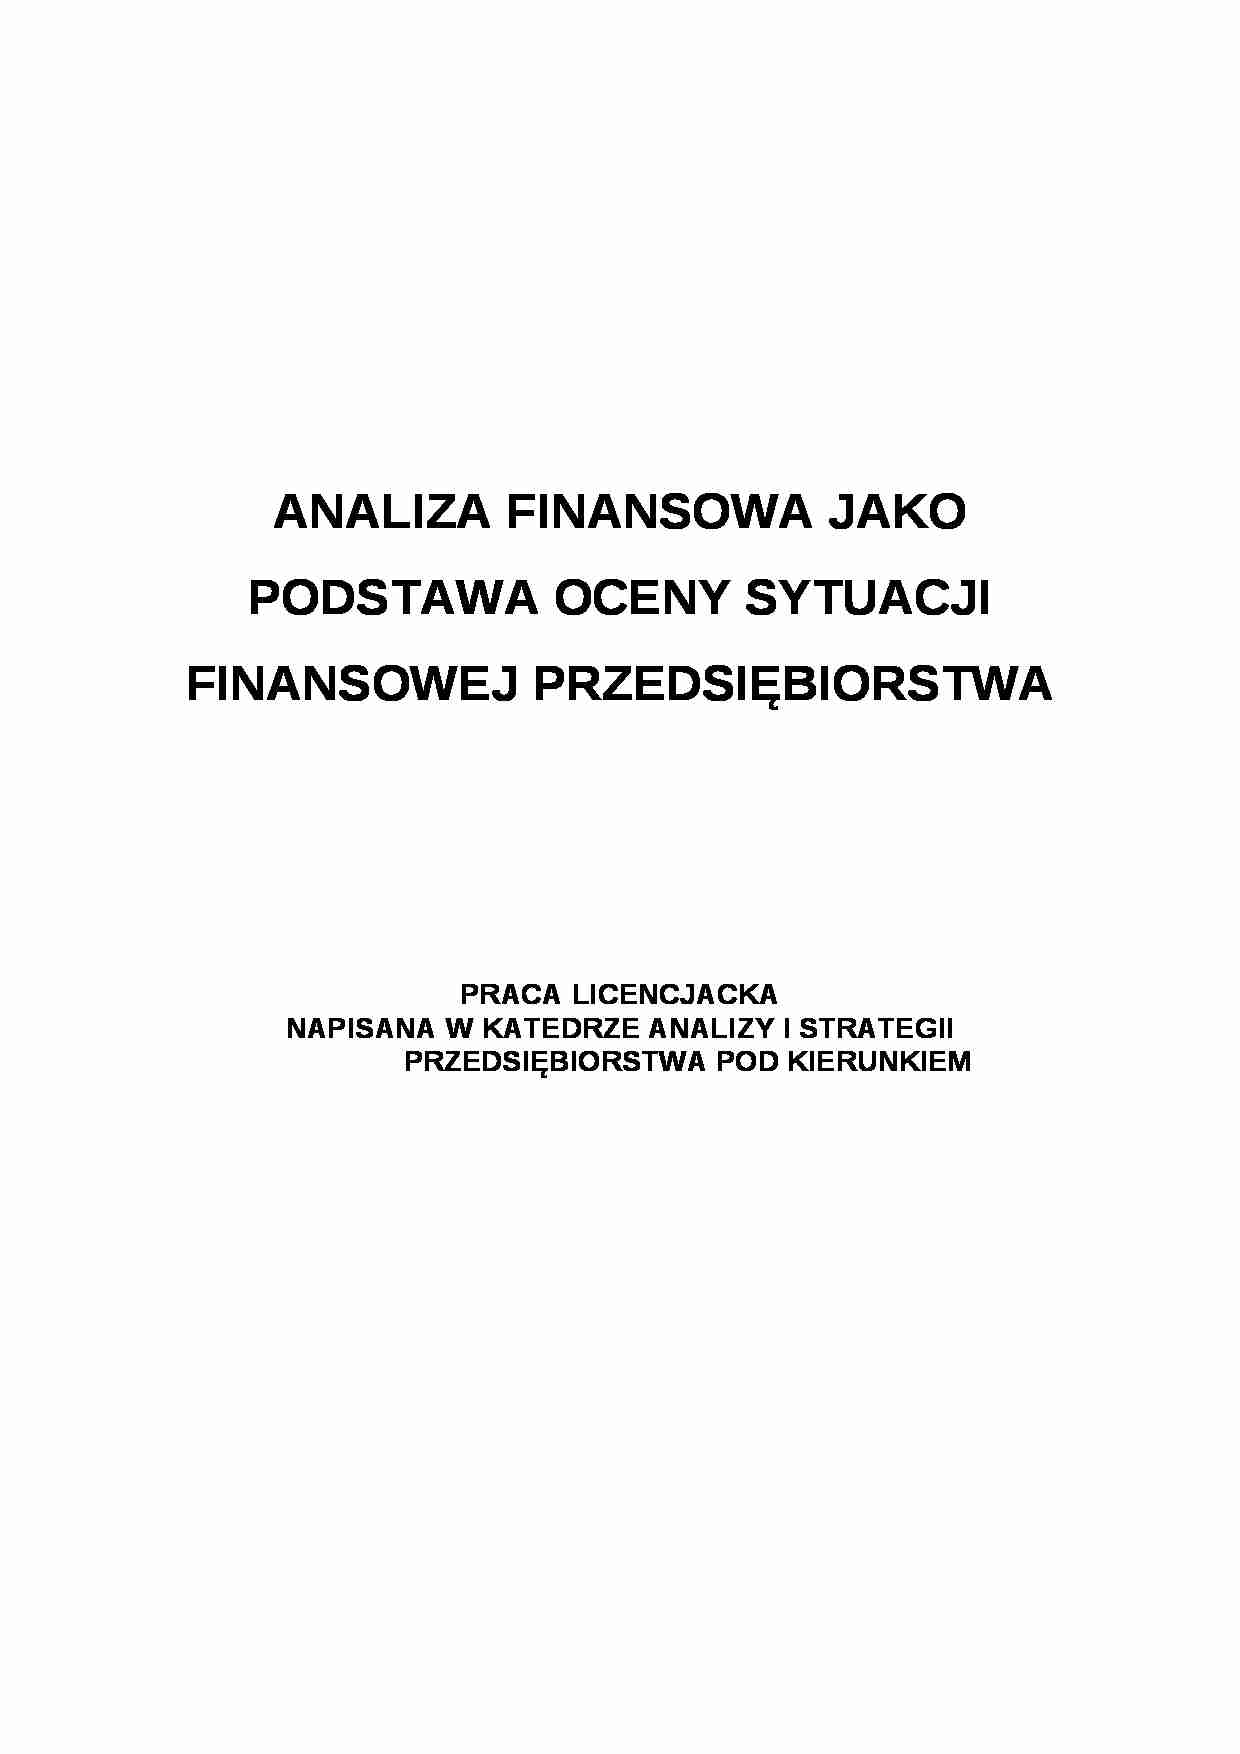 Analiza finansowa - praca licencjacka - strona 1